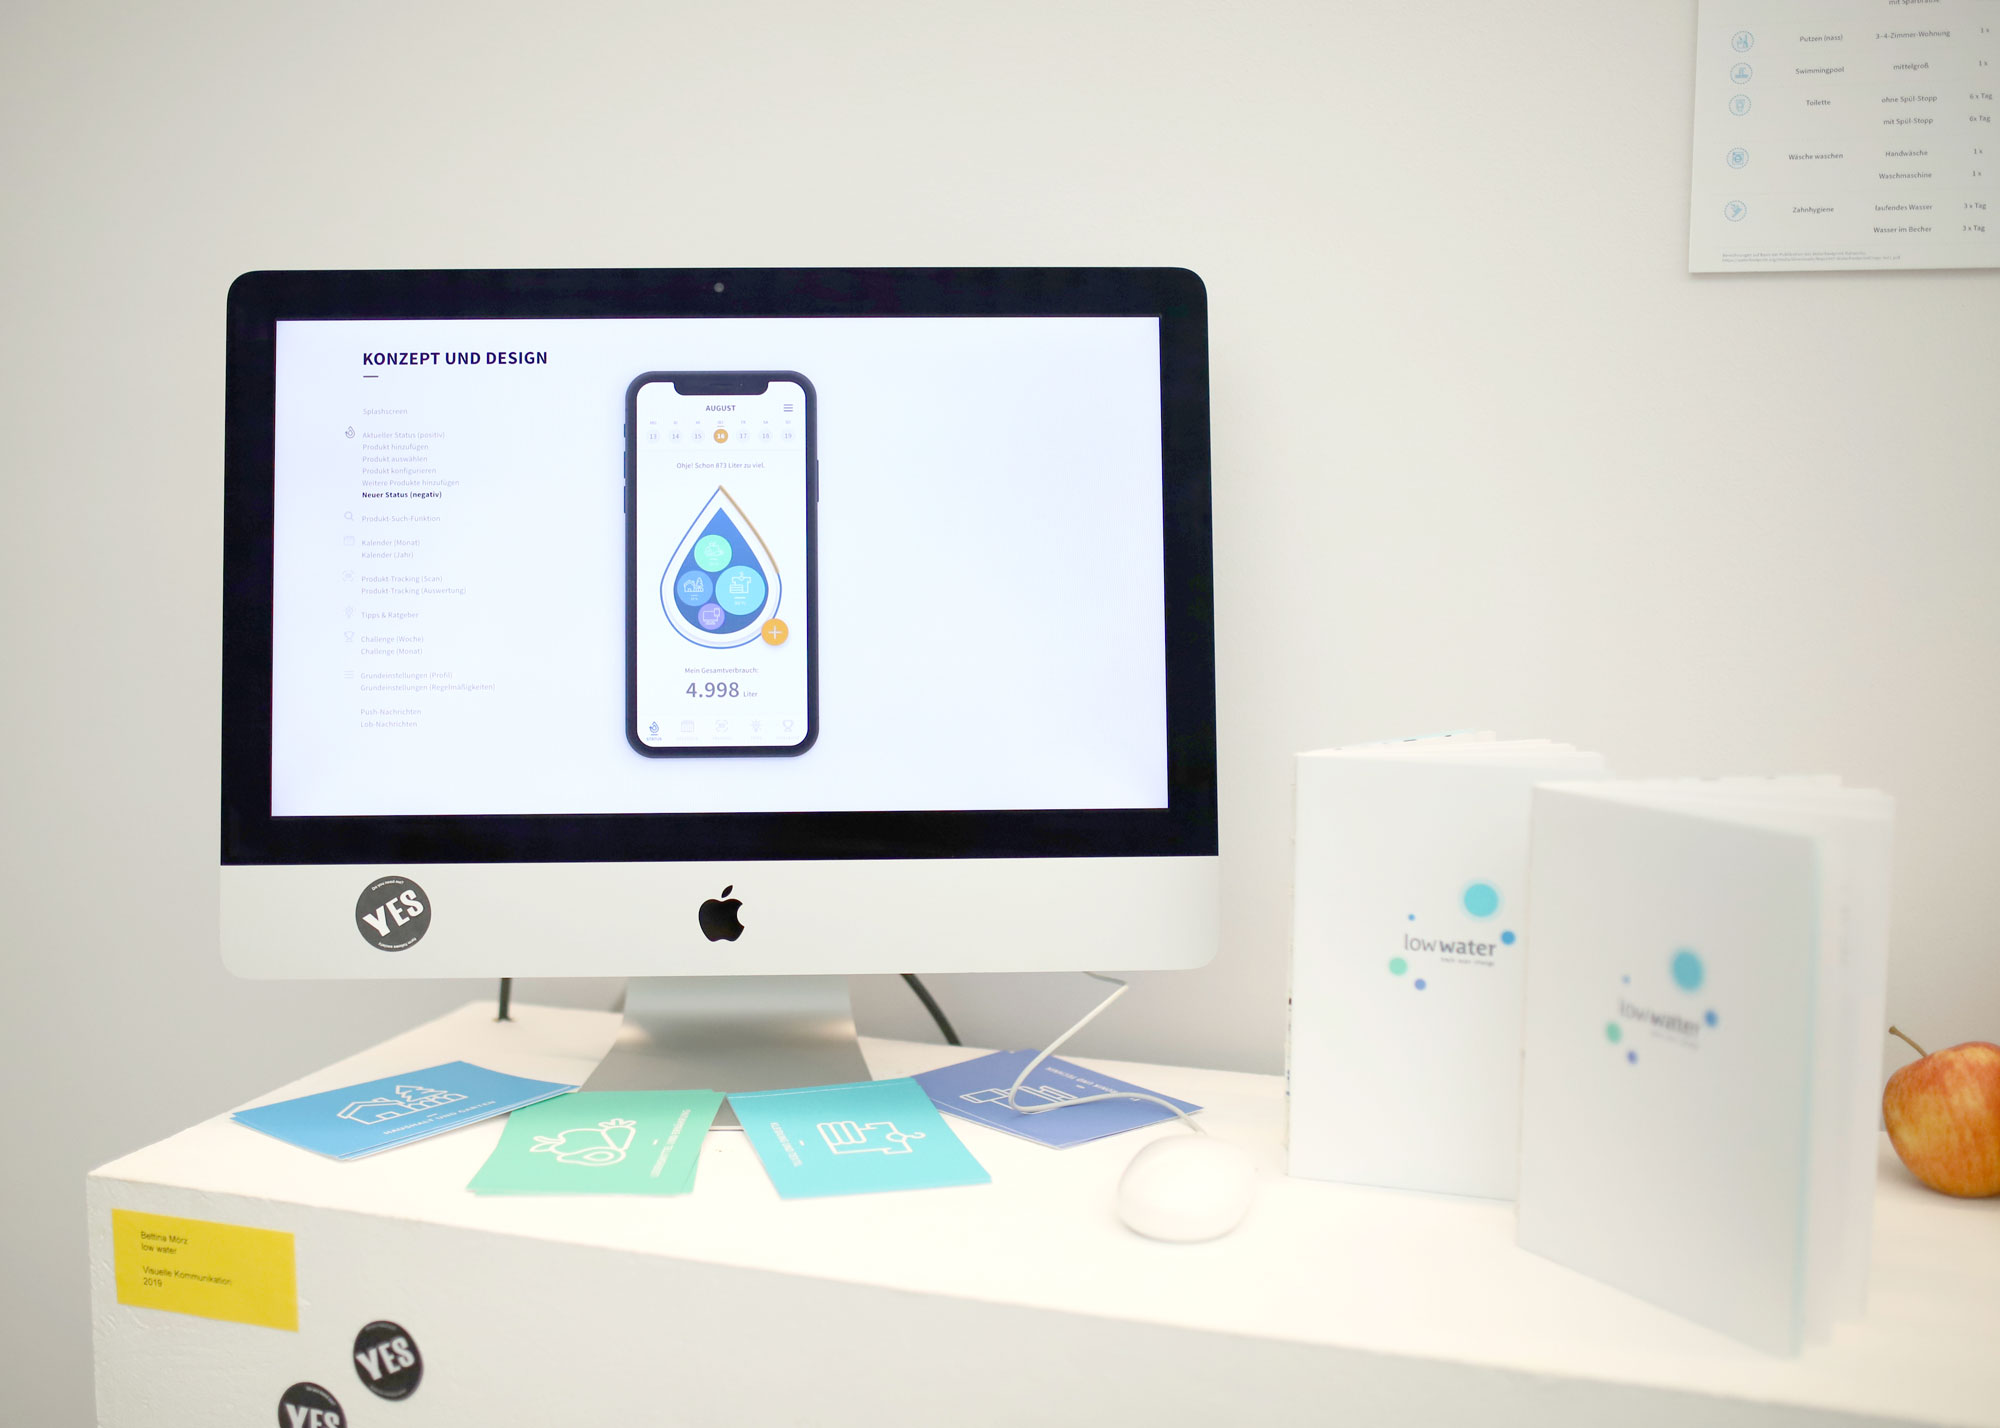 Bettina Mörz, "low water" – die App für ein nachhaltigeres Handeln und einen bewussteren Umgang mit Wasser